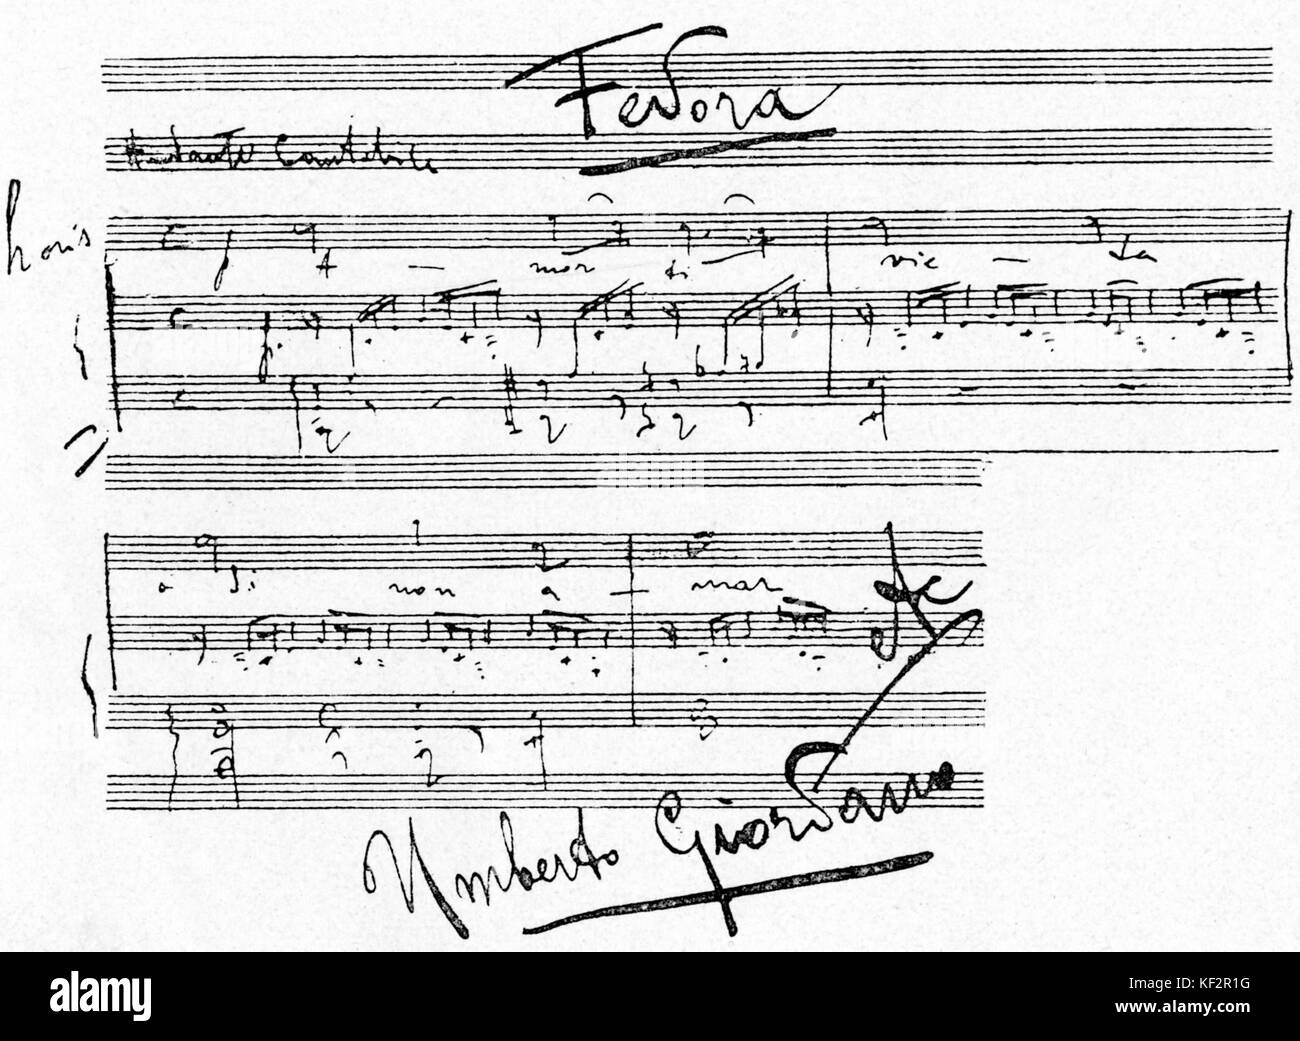 Fedora - manoscritto pagina con sottoscrizione autografa del compositore Umberto Giordano. UG: Italiano compositore operistico, 28 agosto 1867 - 12 novembre 1948 Foto Stock